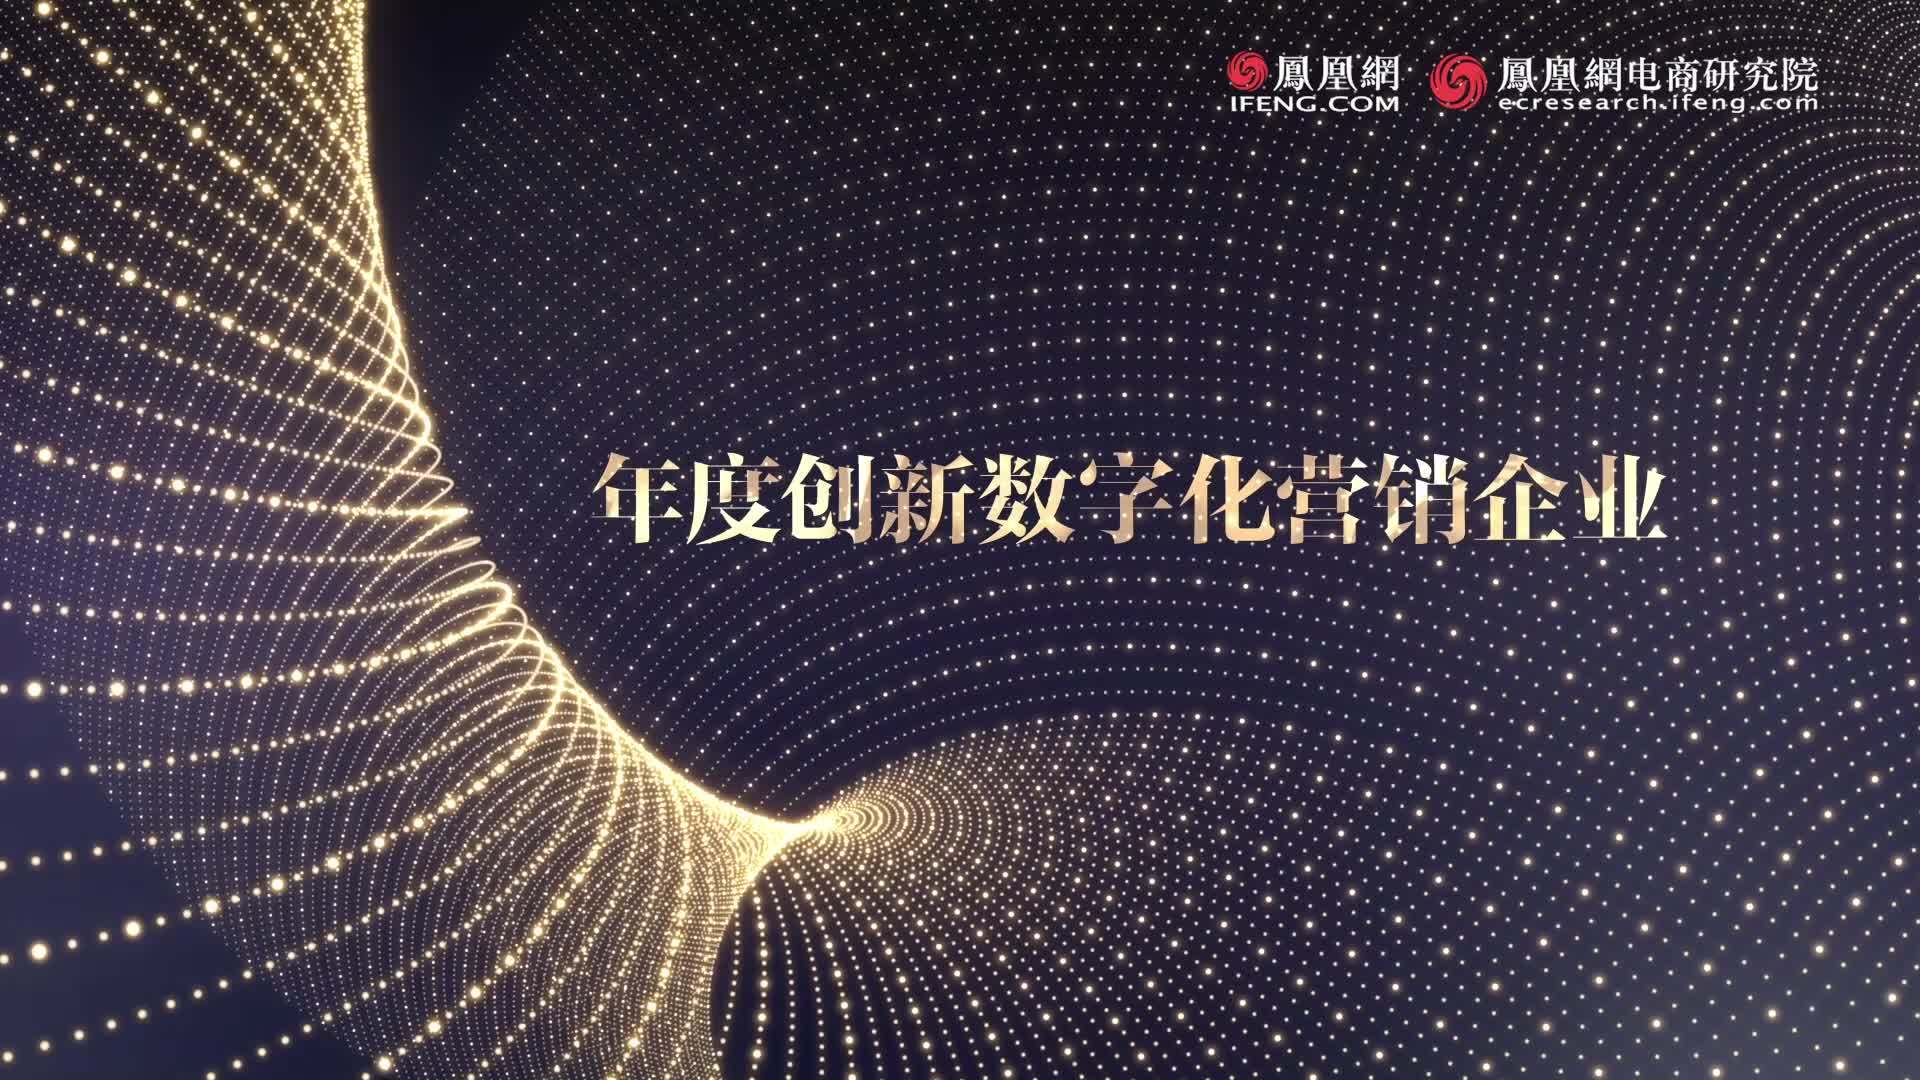 年度创新数字化营销企业——北京圣泽天下网络科技有限公司 